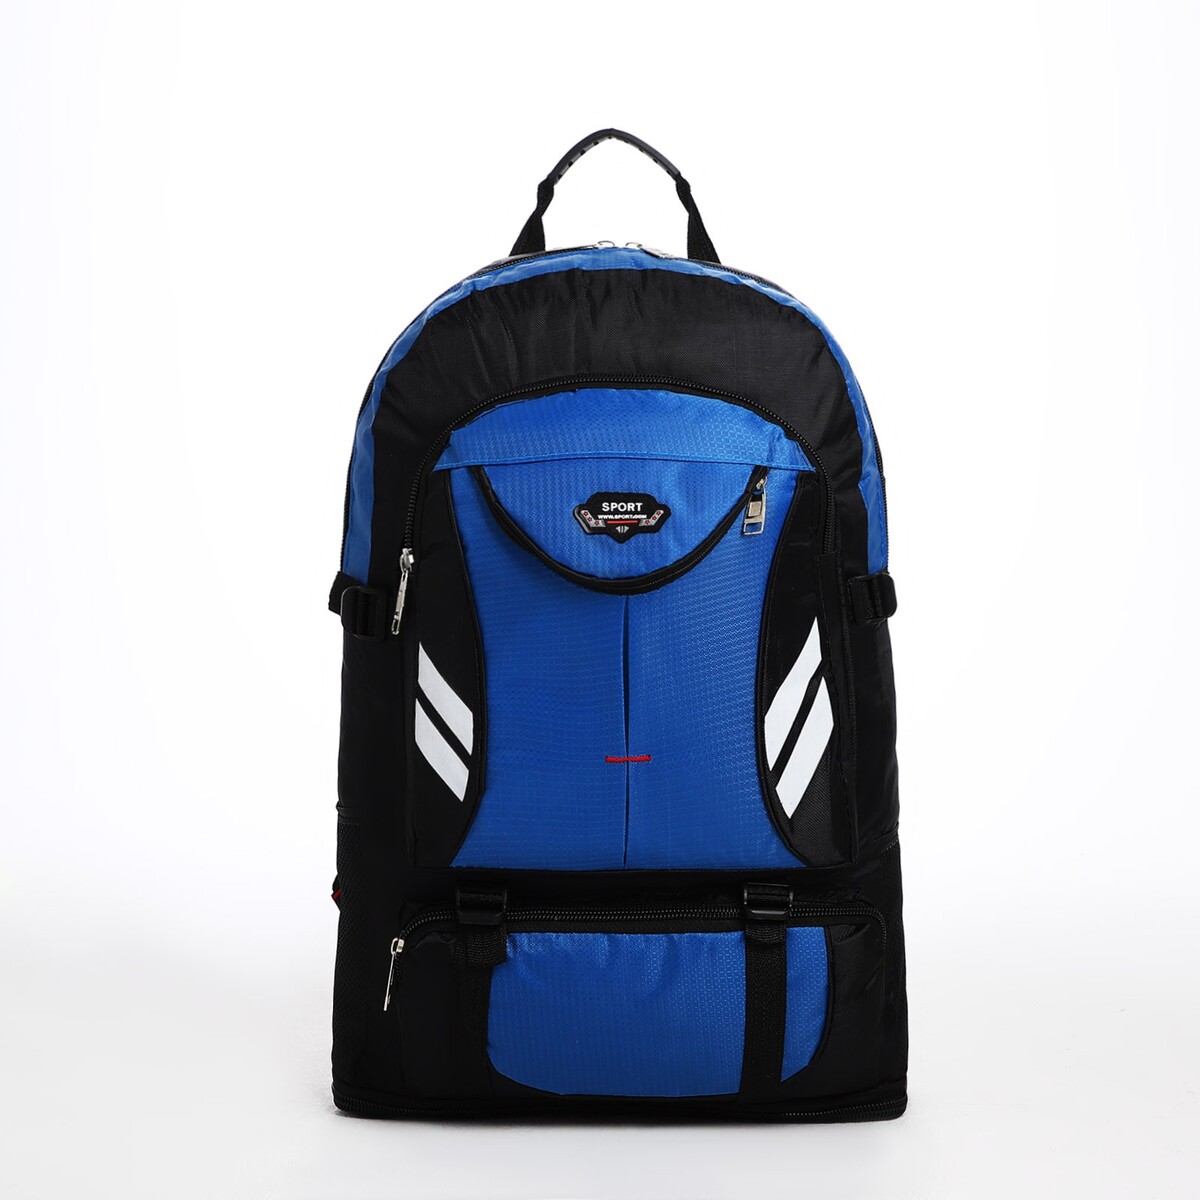 Рюкзак туристический на молнии, 4 наружных кармана, цвет синий/черный рюкзак туристический на молнии 4 наружных кармана синий